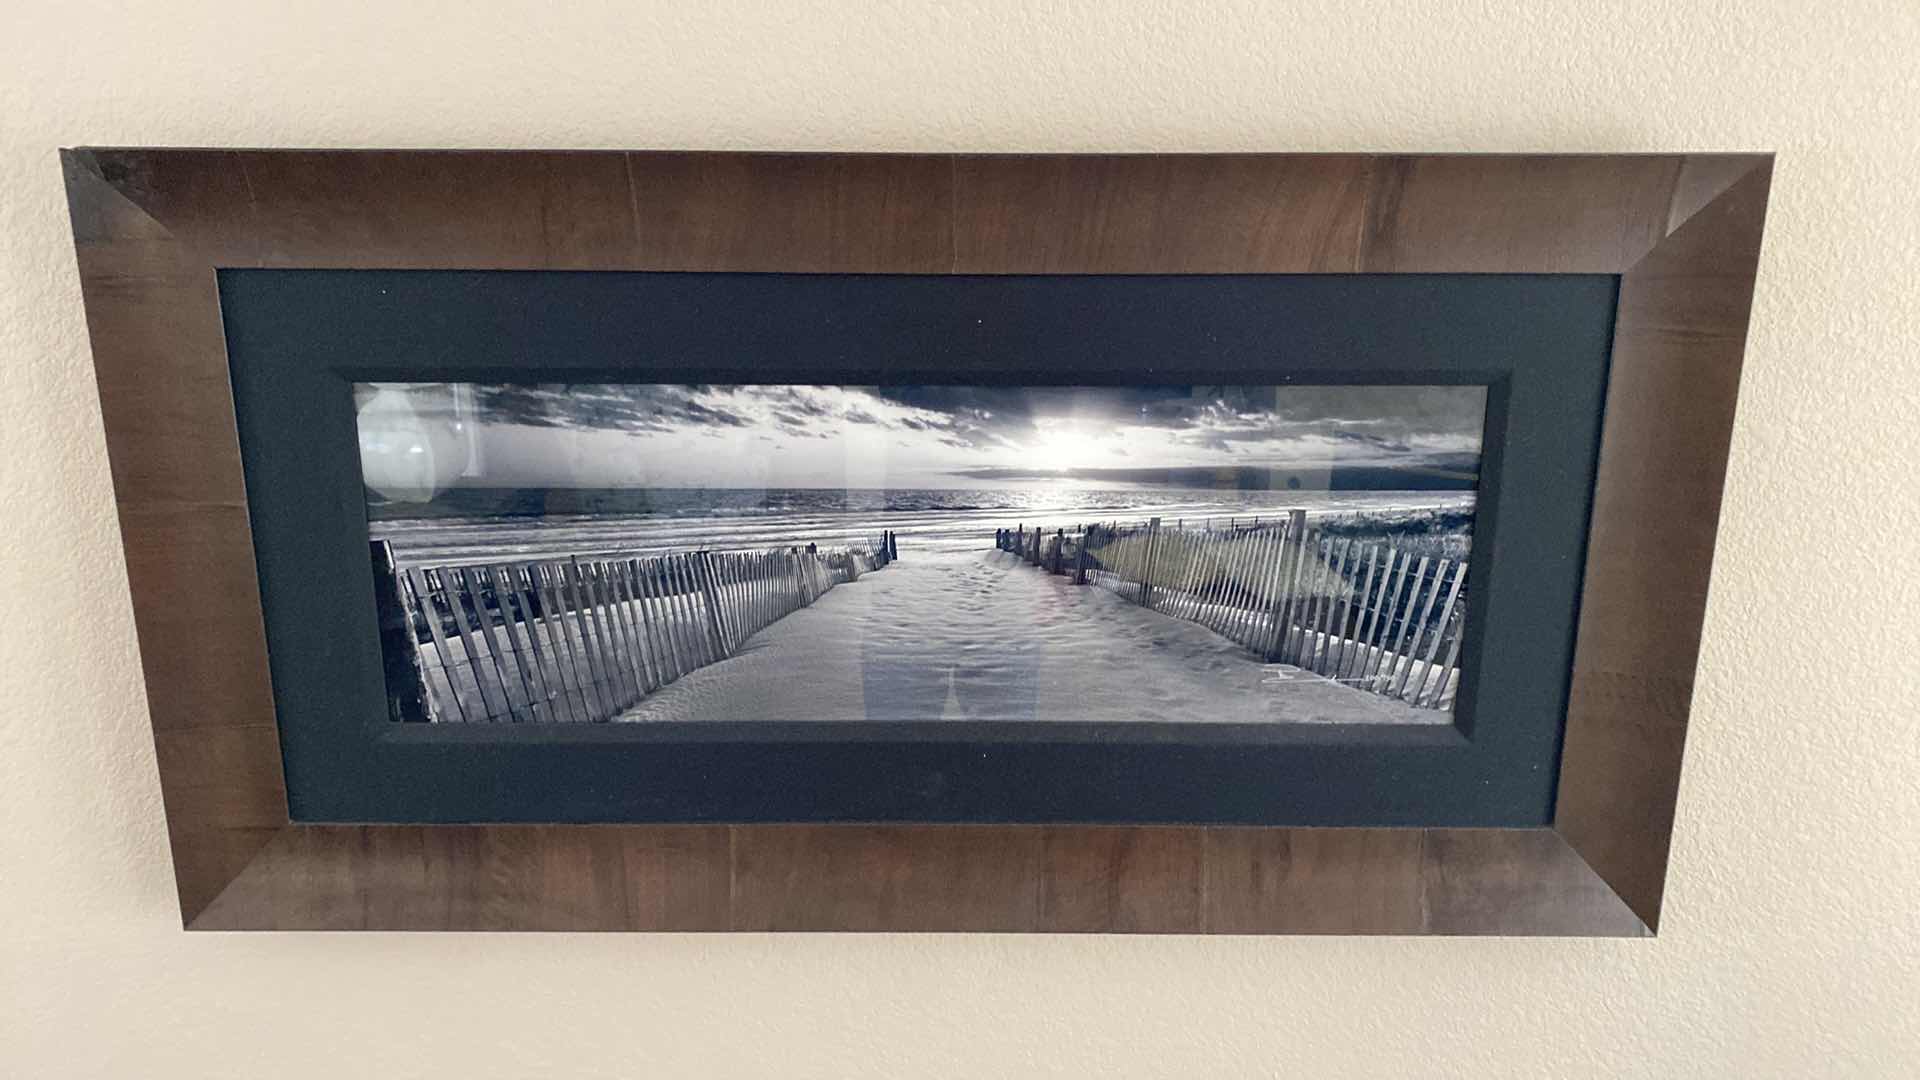 Photo 2 of GALLERY FRAMED SIGNED PETER LIK BLACK/WHITE BEACH SCENE 200/950 ARTWORK 56” x 29” including frame, coa not available